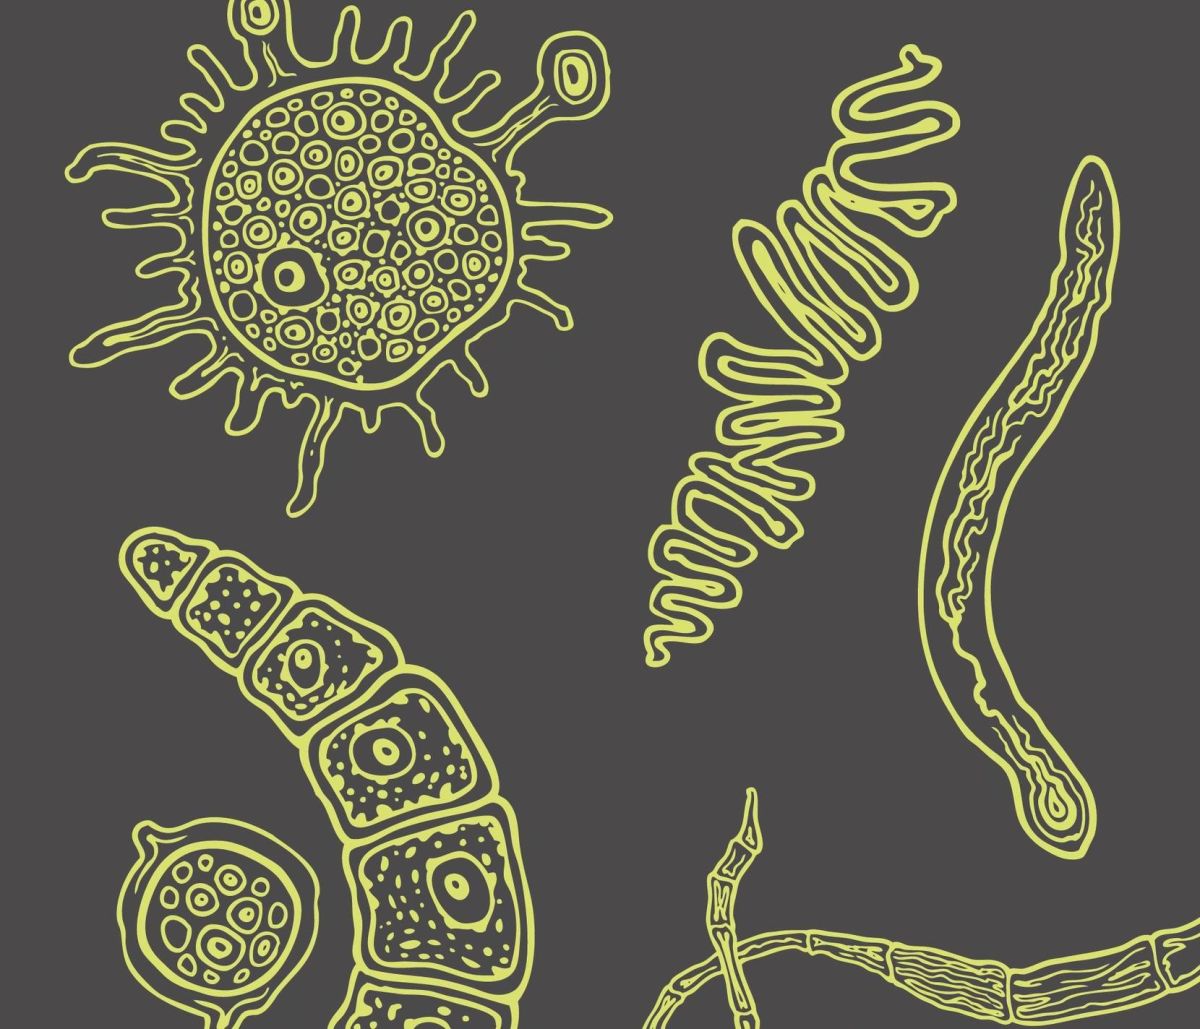 INVISIBLES. Das verborgene Leben der Mikroben